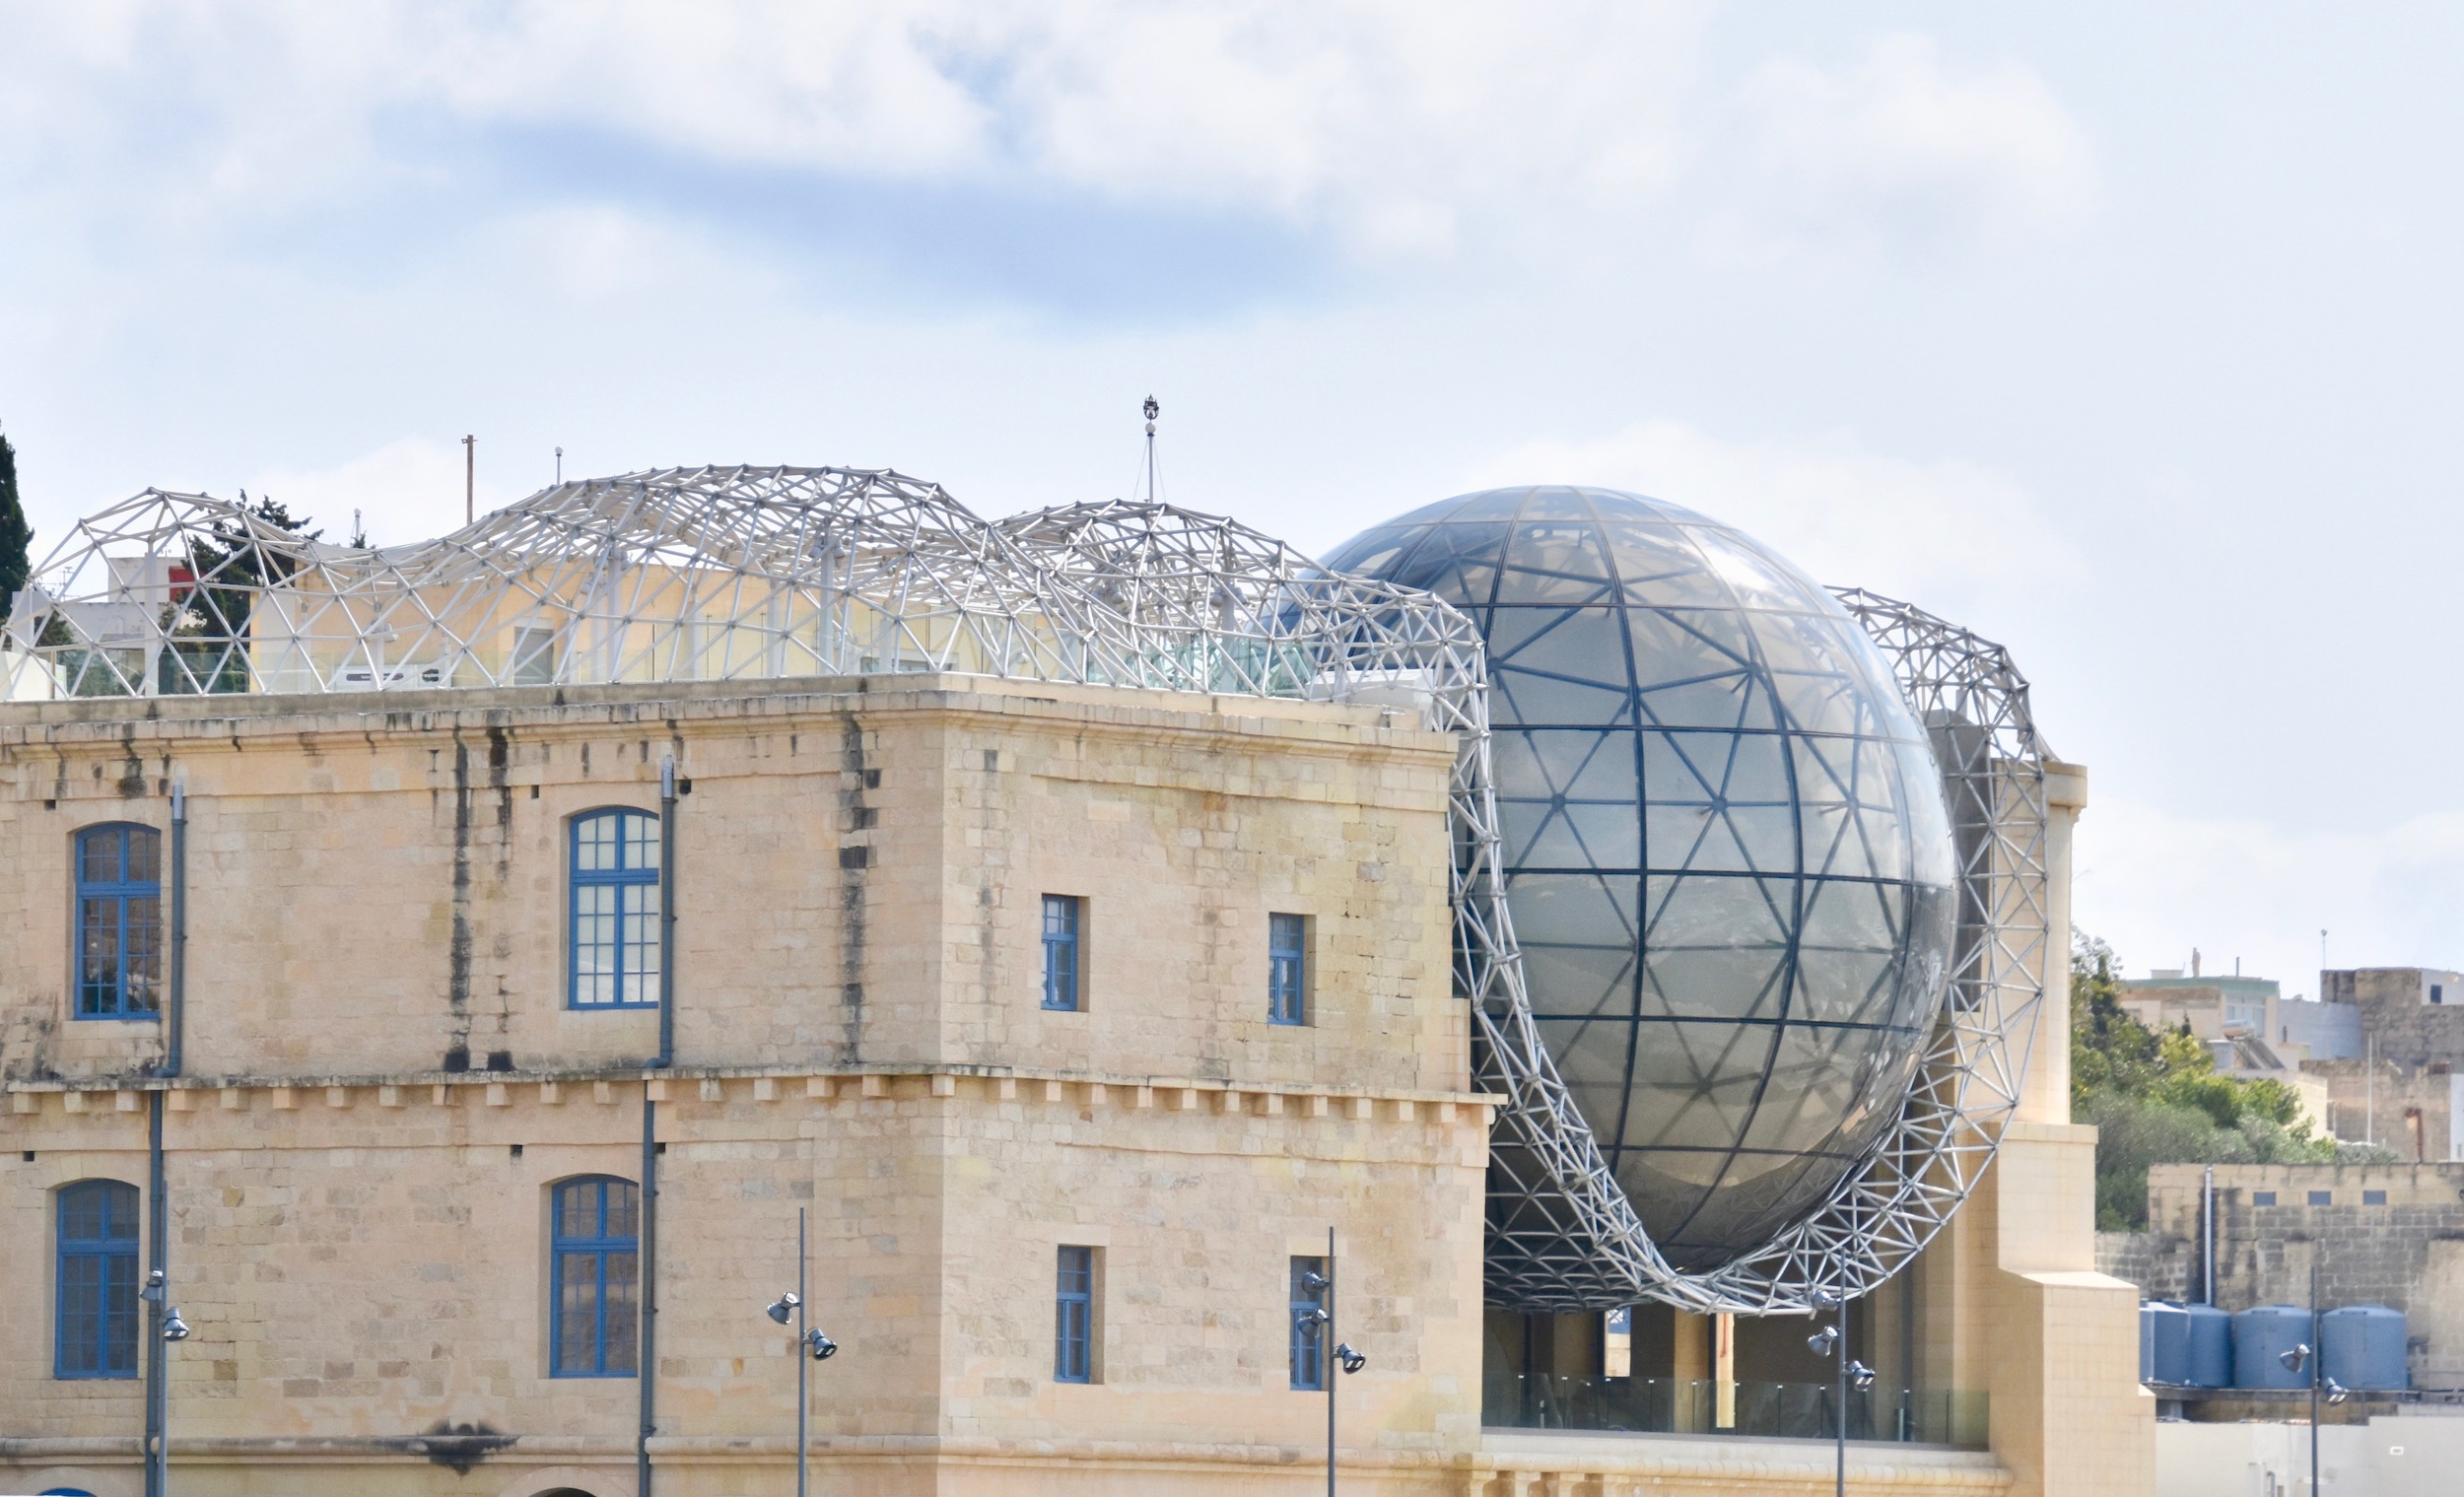  Malta Planetarium, Grand Harbour